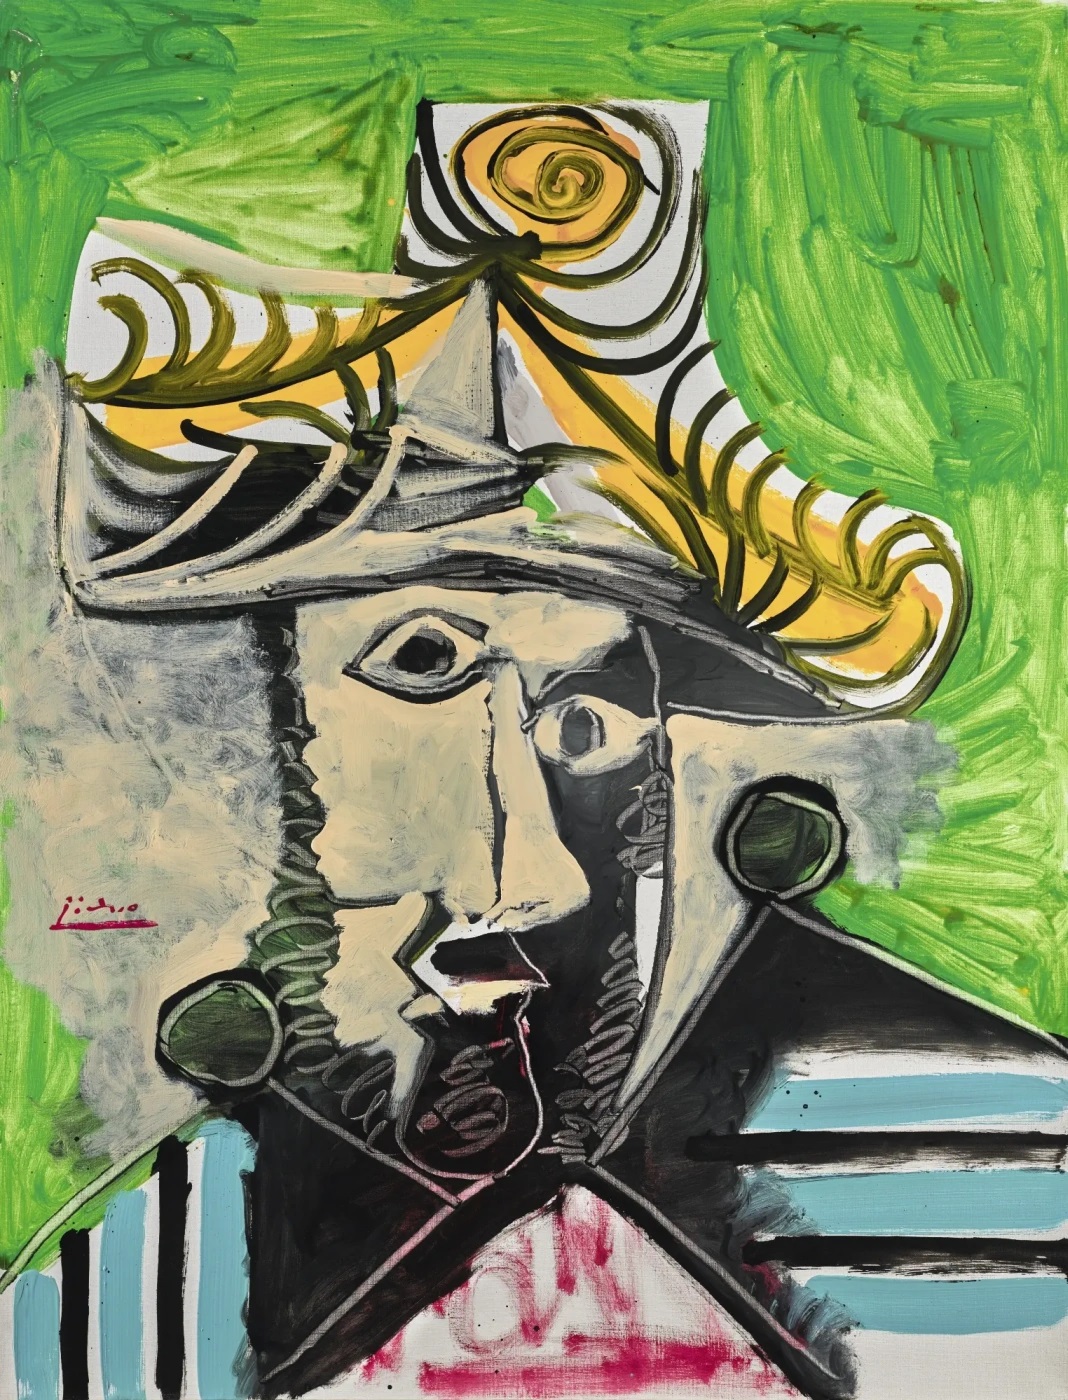 Пабло Пикассо. "Голова мужчины". 1969. Частная коллекция.